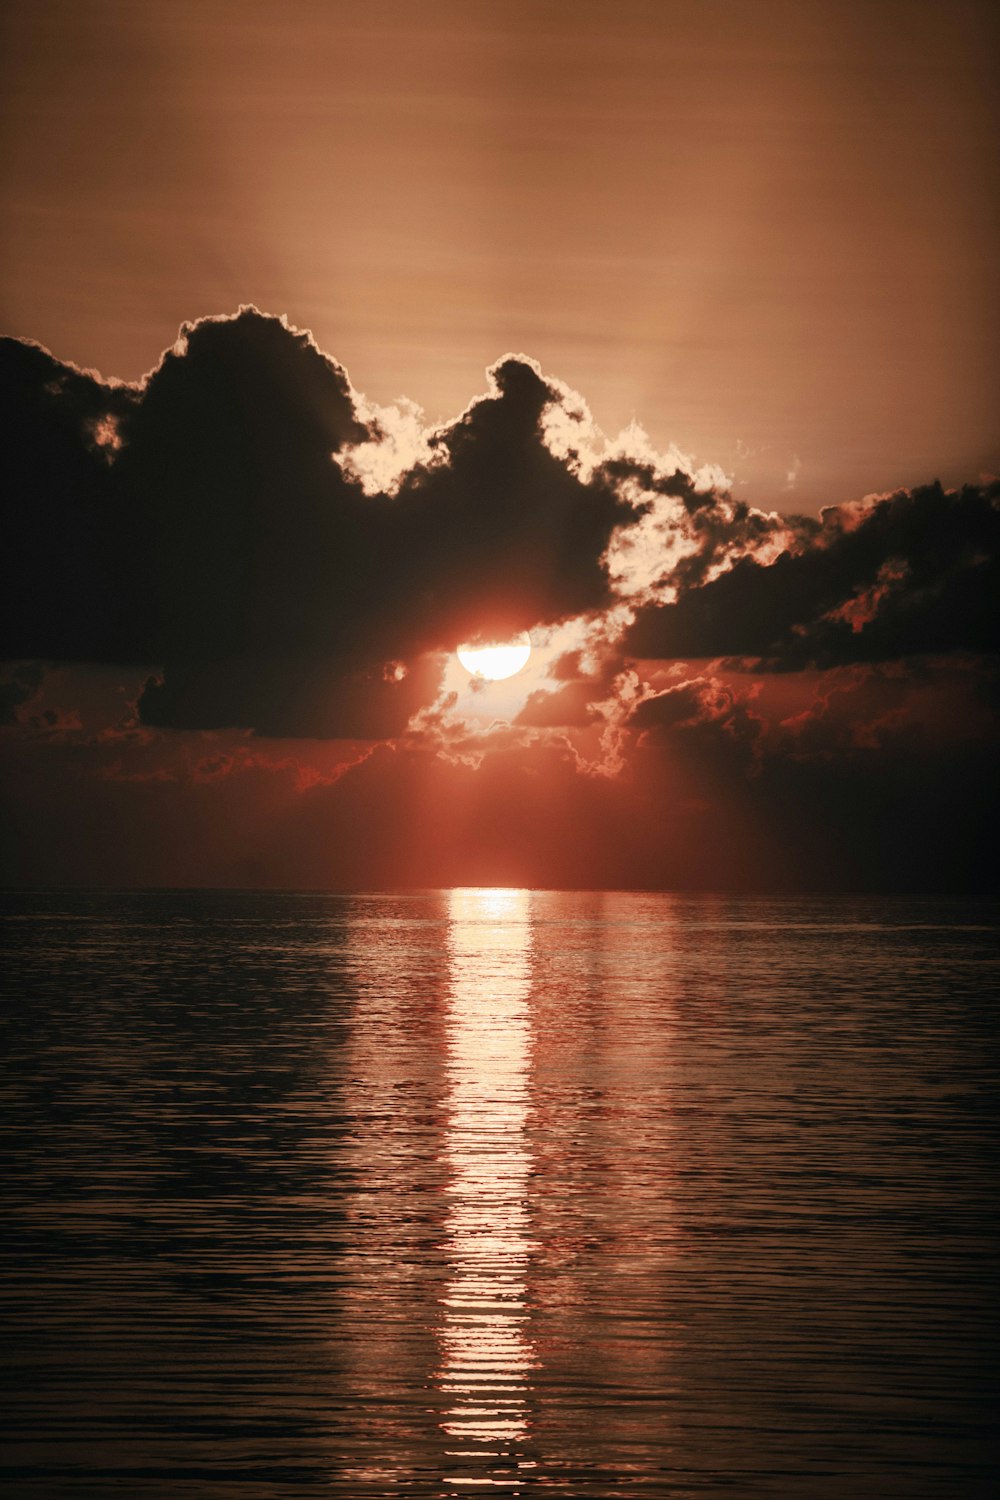 Sol poniente naranja detrás de nubes negras sobre el mar